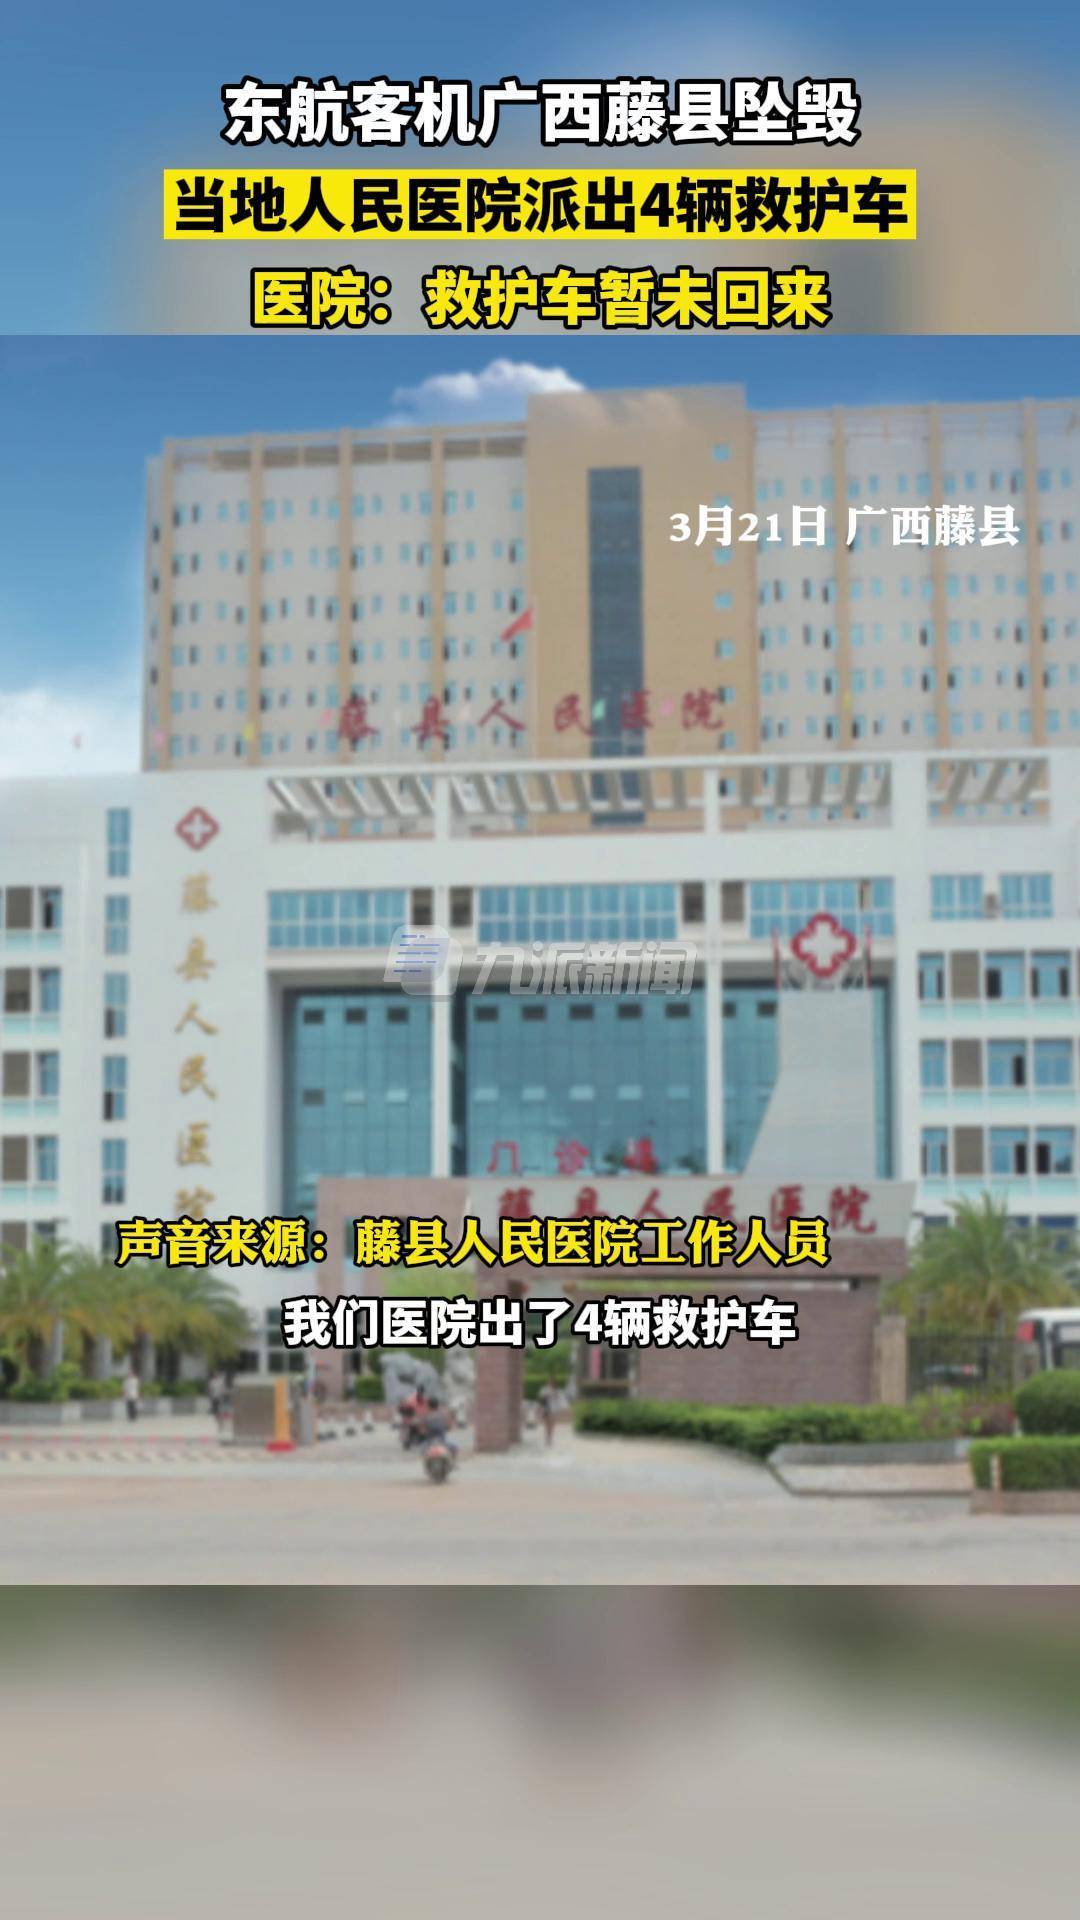 藤县人民医院李潘良图片